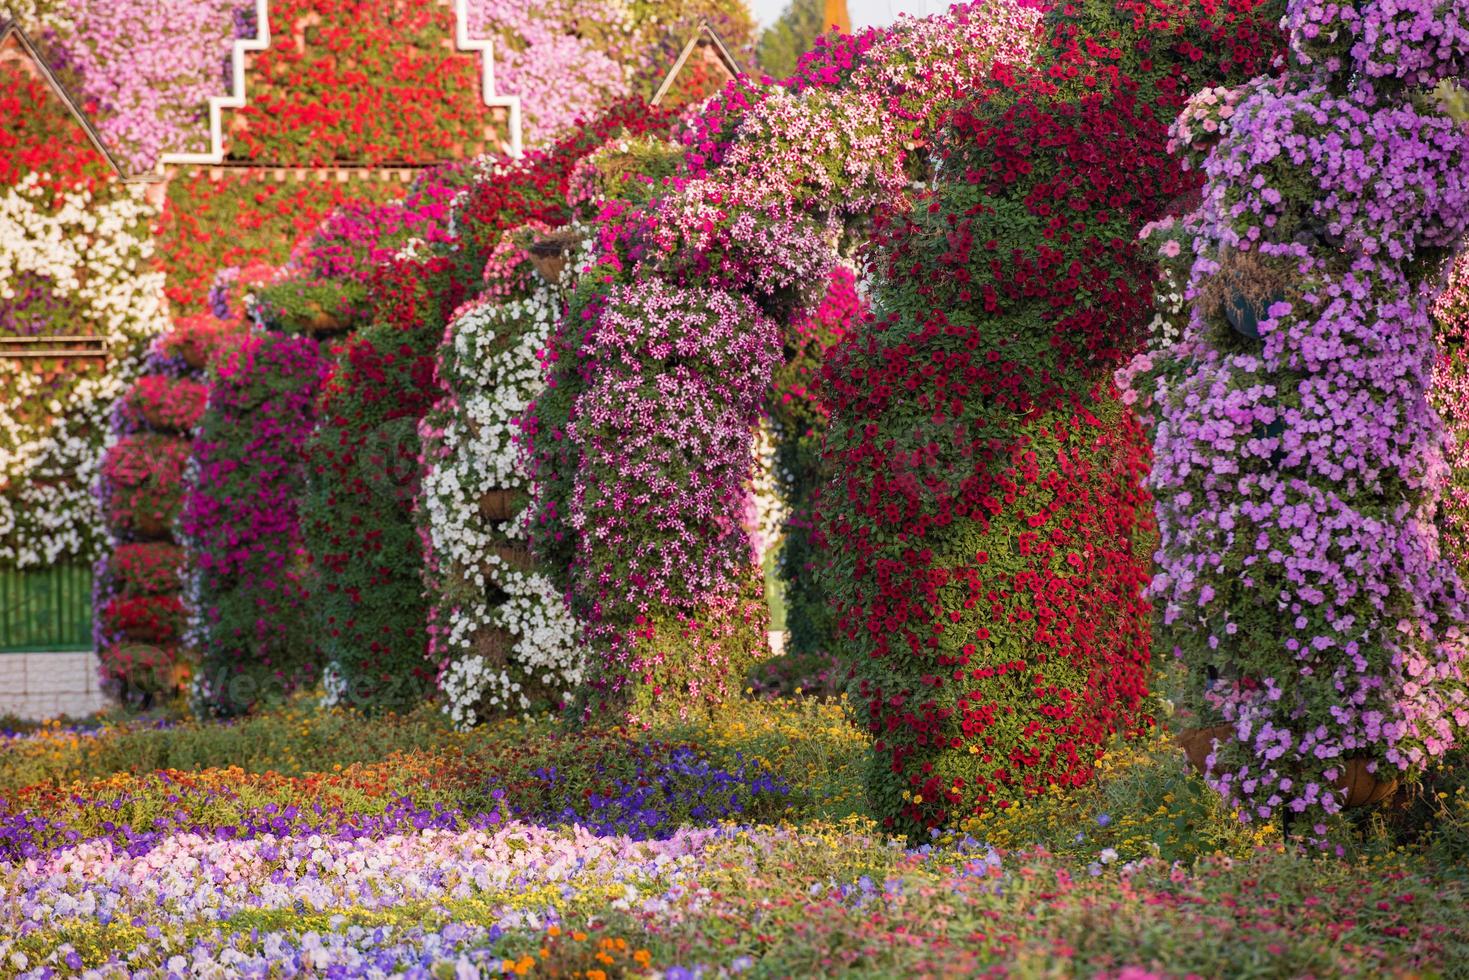 Dubai Wundergarten foto